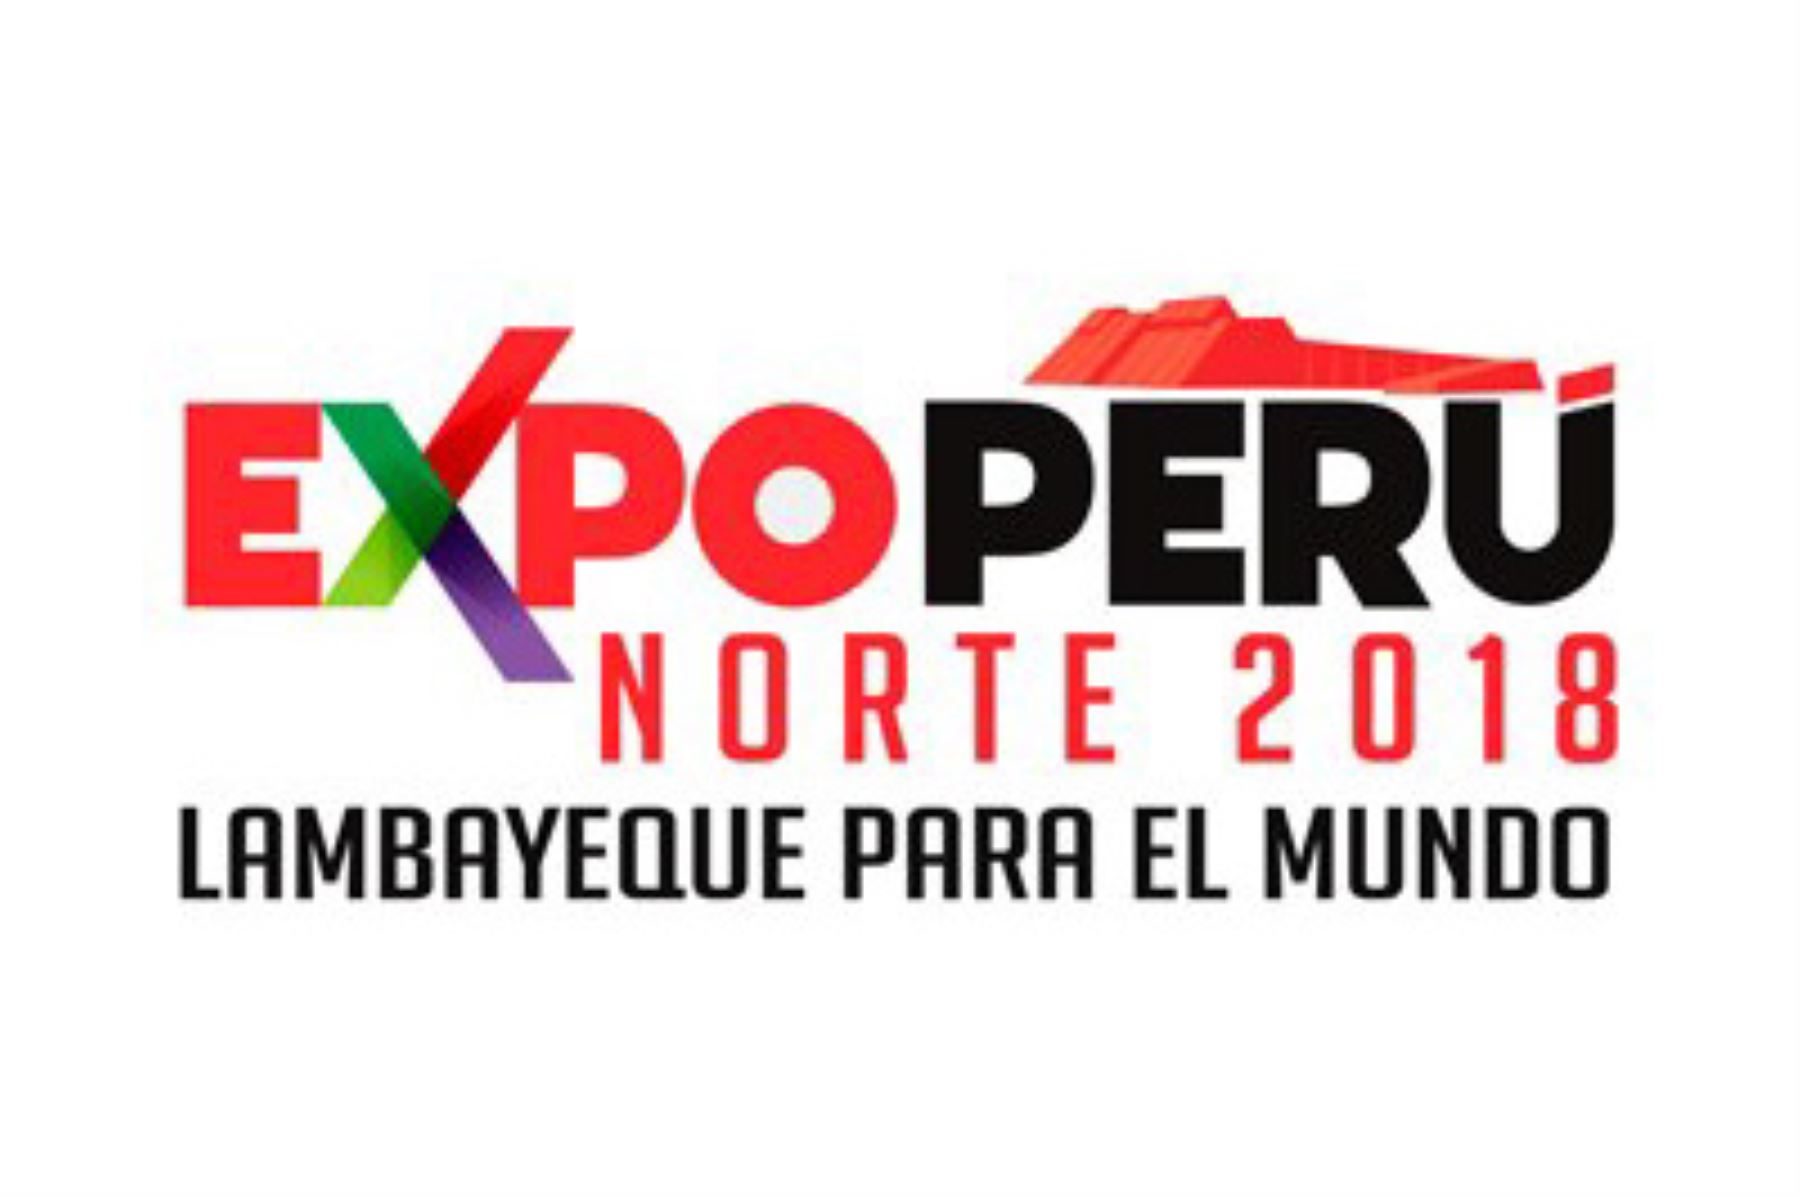 El Ministerio de Comercio Exterior y Turismo (Mincetur) declaró de interés nacional la realización del evento denominado Expo Perú Norte 2018 “Lambayeque para el mundo”, a desarrollarse del 26 al 29 de abril en la ciudad de Chiclayo, departamento de Lambayeque.